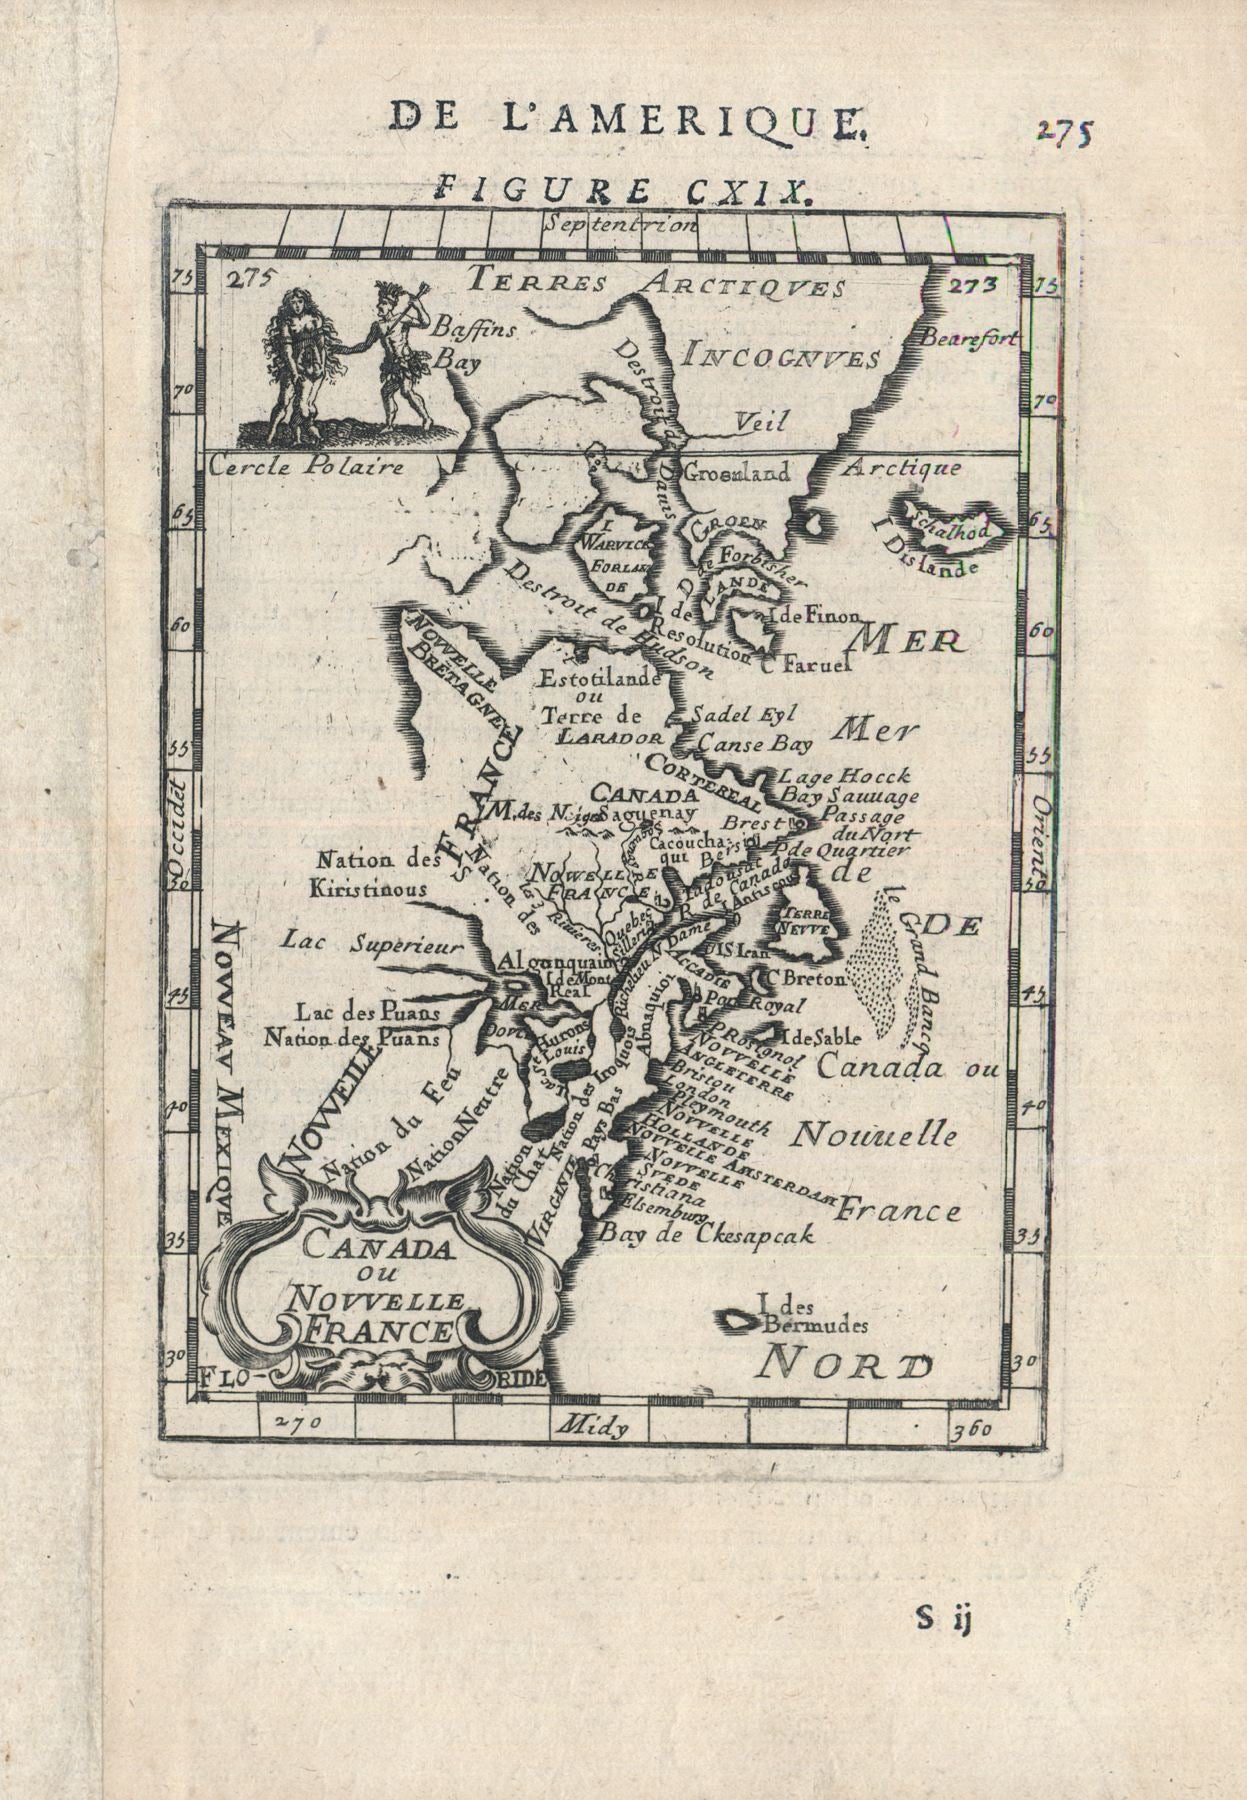 Mallet, Alain: Canada ou Nouvelle France. 1683